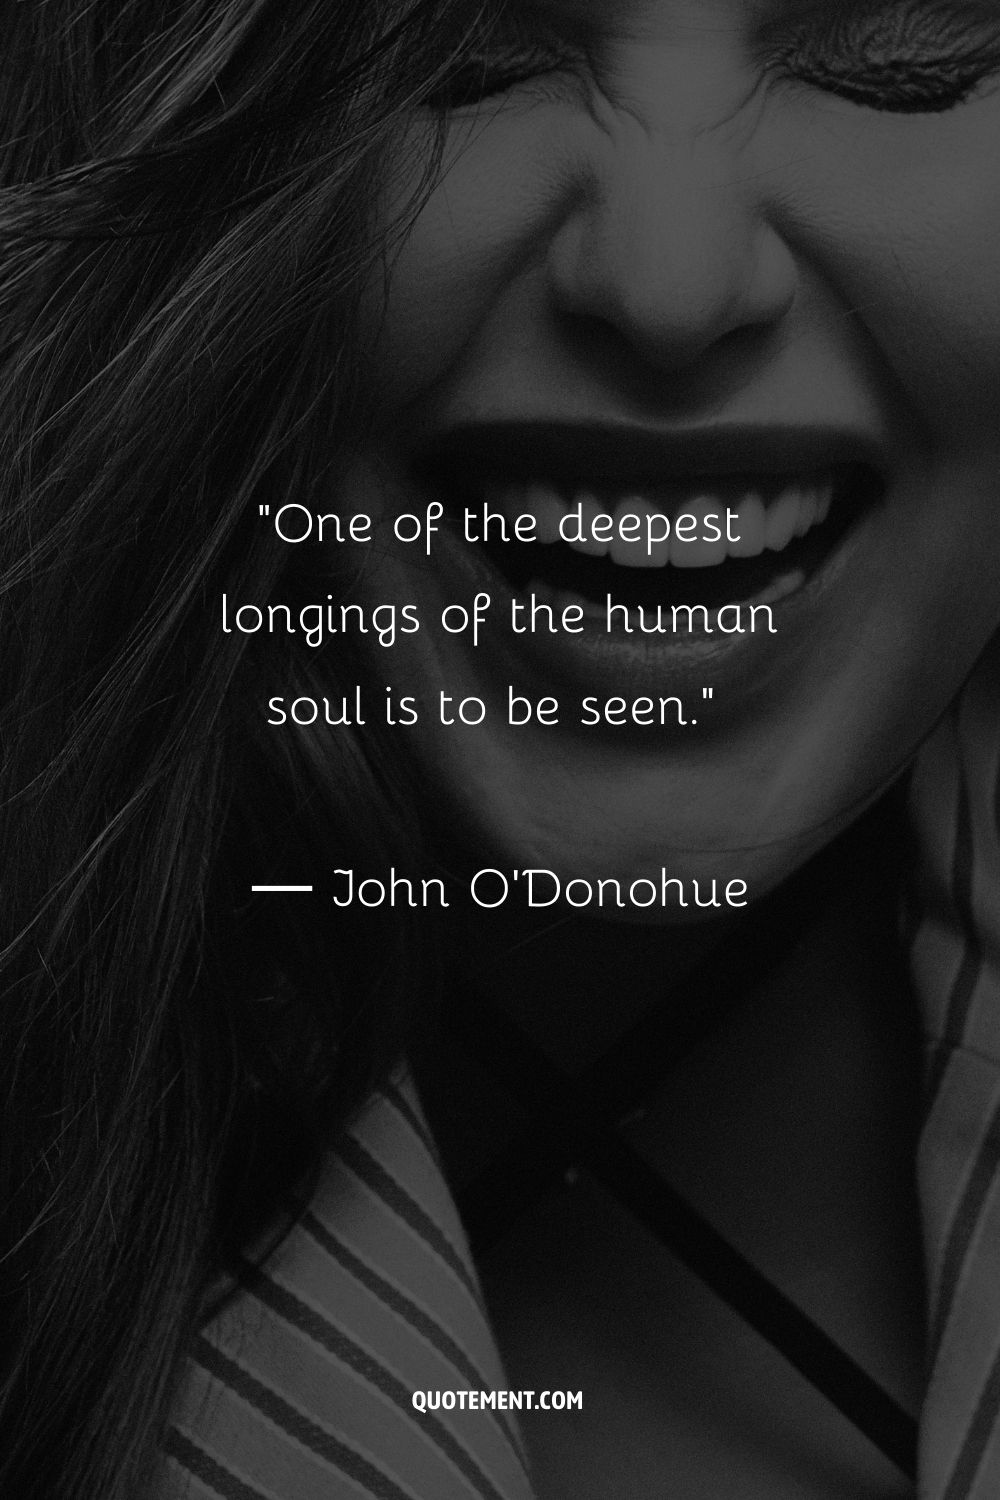 Uno de los anhelos más profundos del alma humana es ser visto.